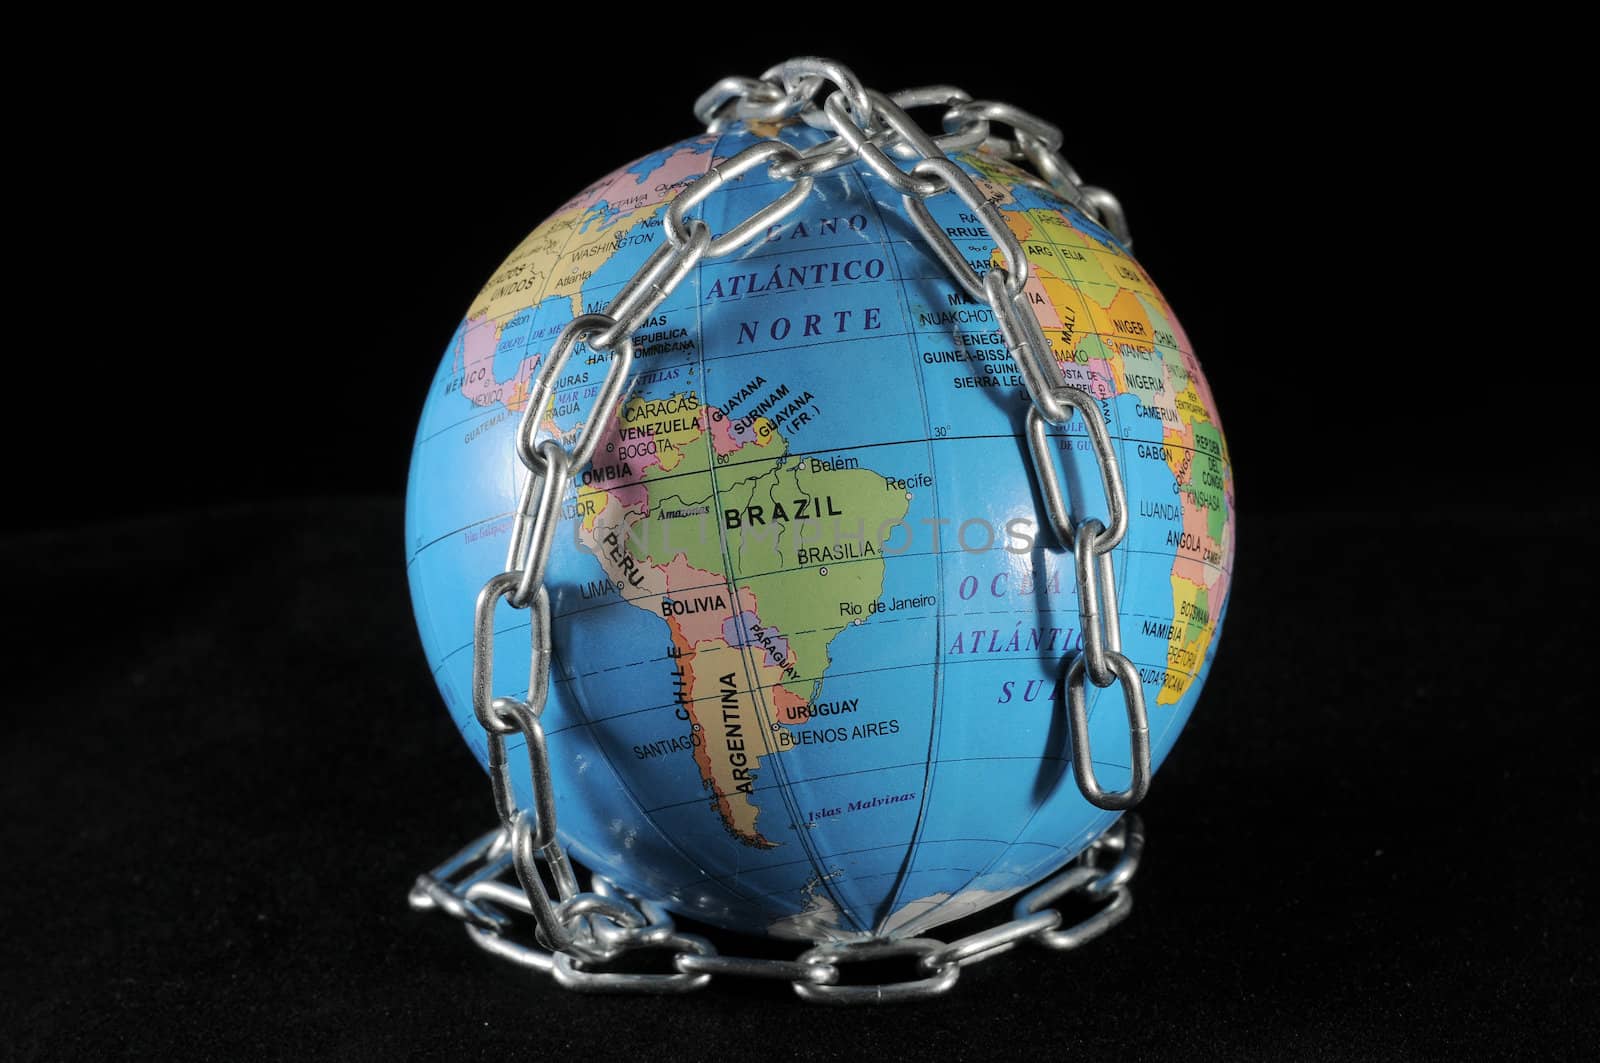 World in chains by underworld